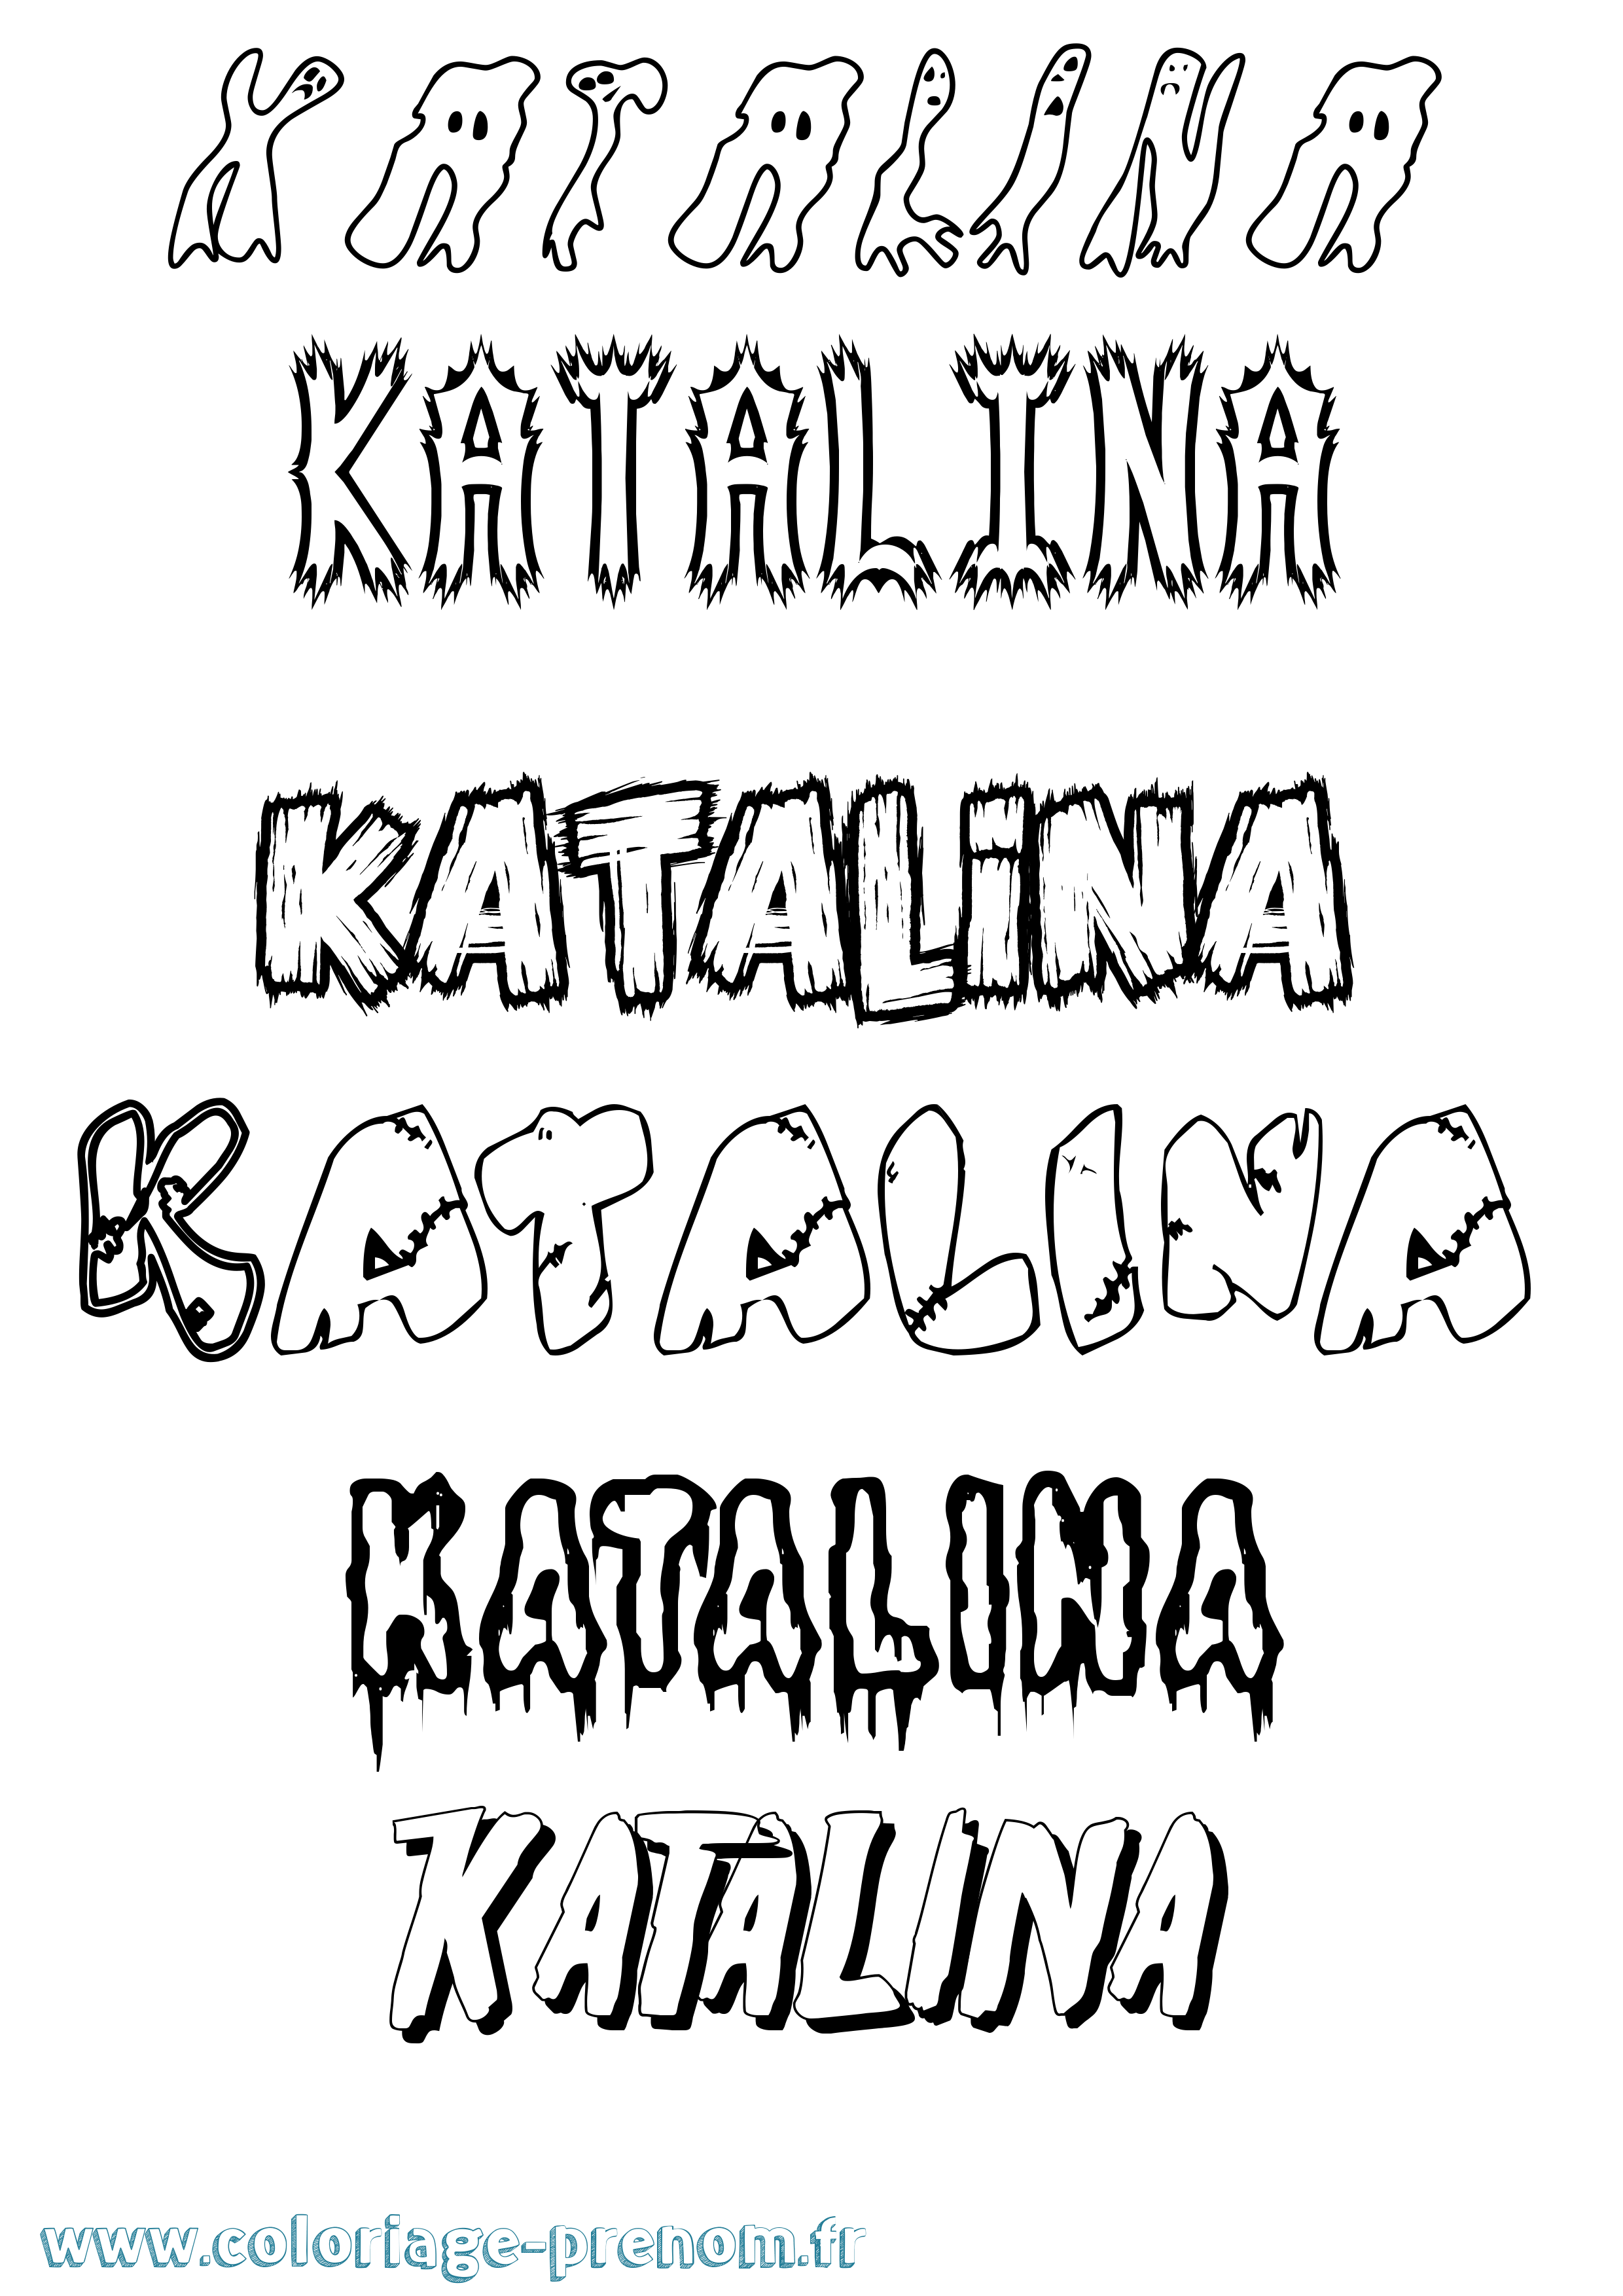 Coloriage prénom Katalina Frisson